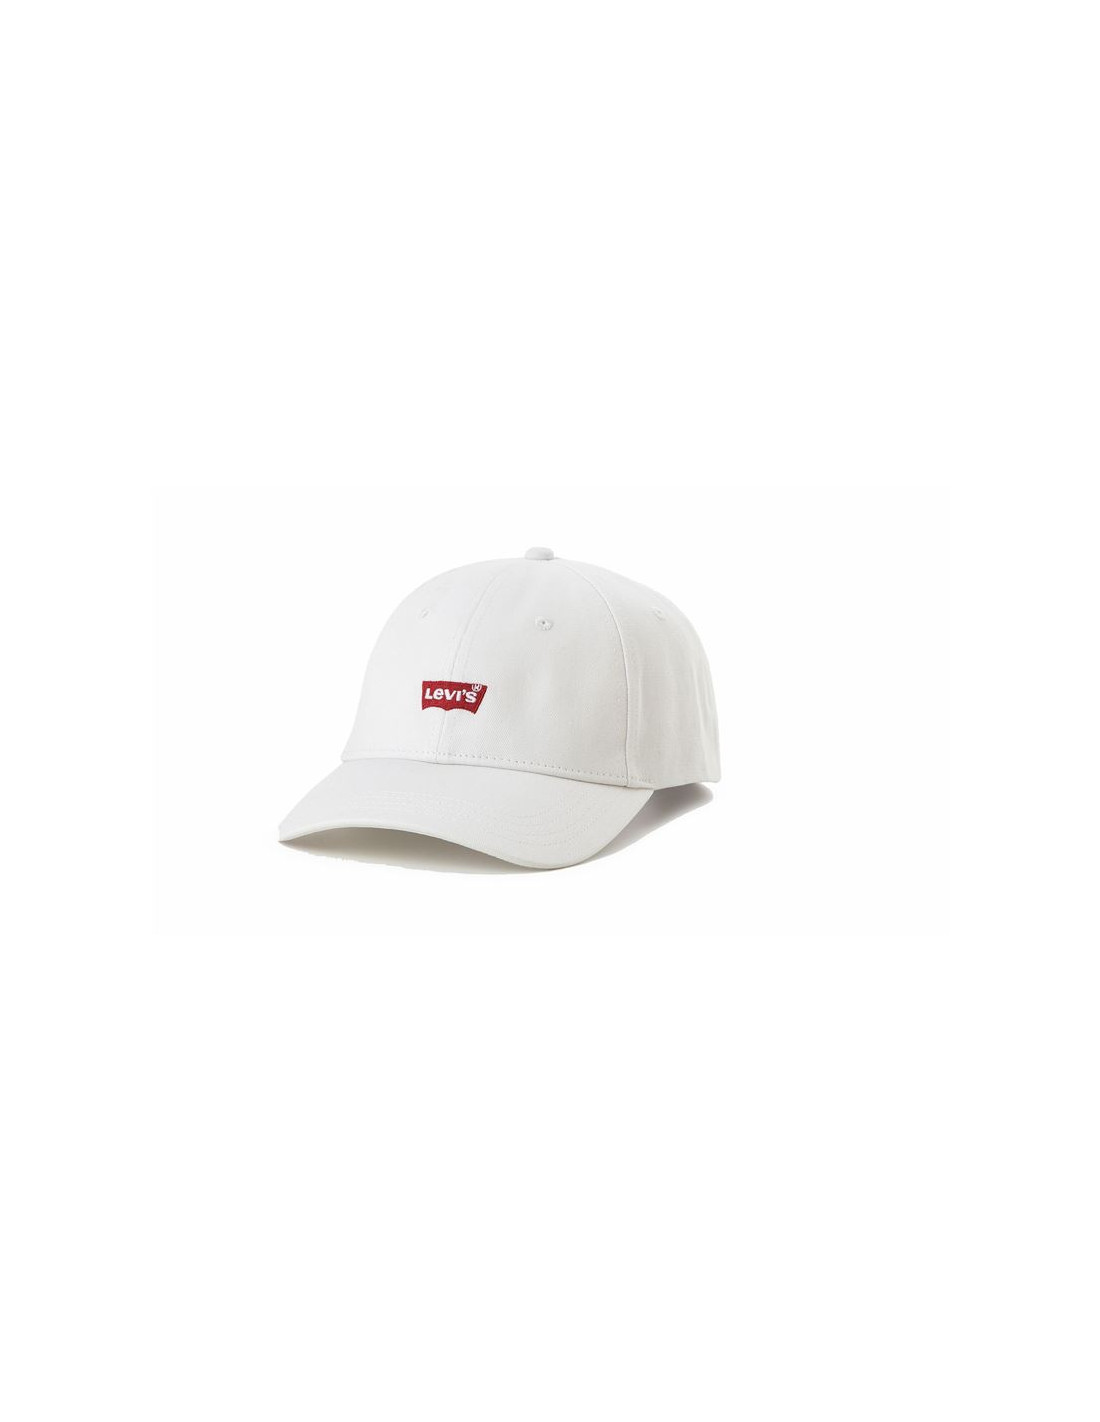 Gorra levi's housemark flexfit cap regular white